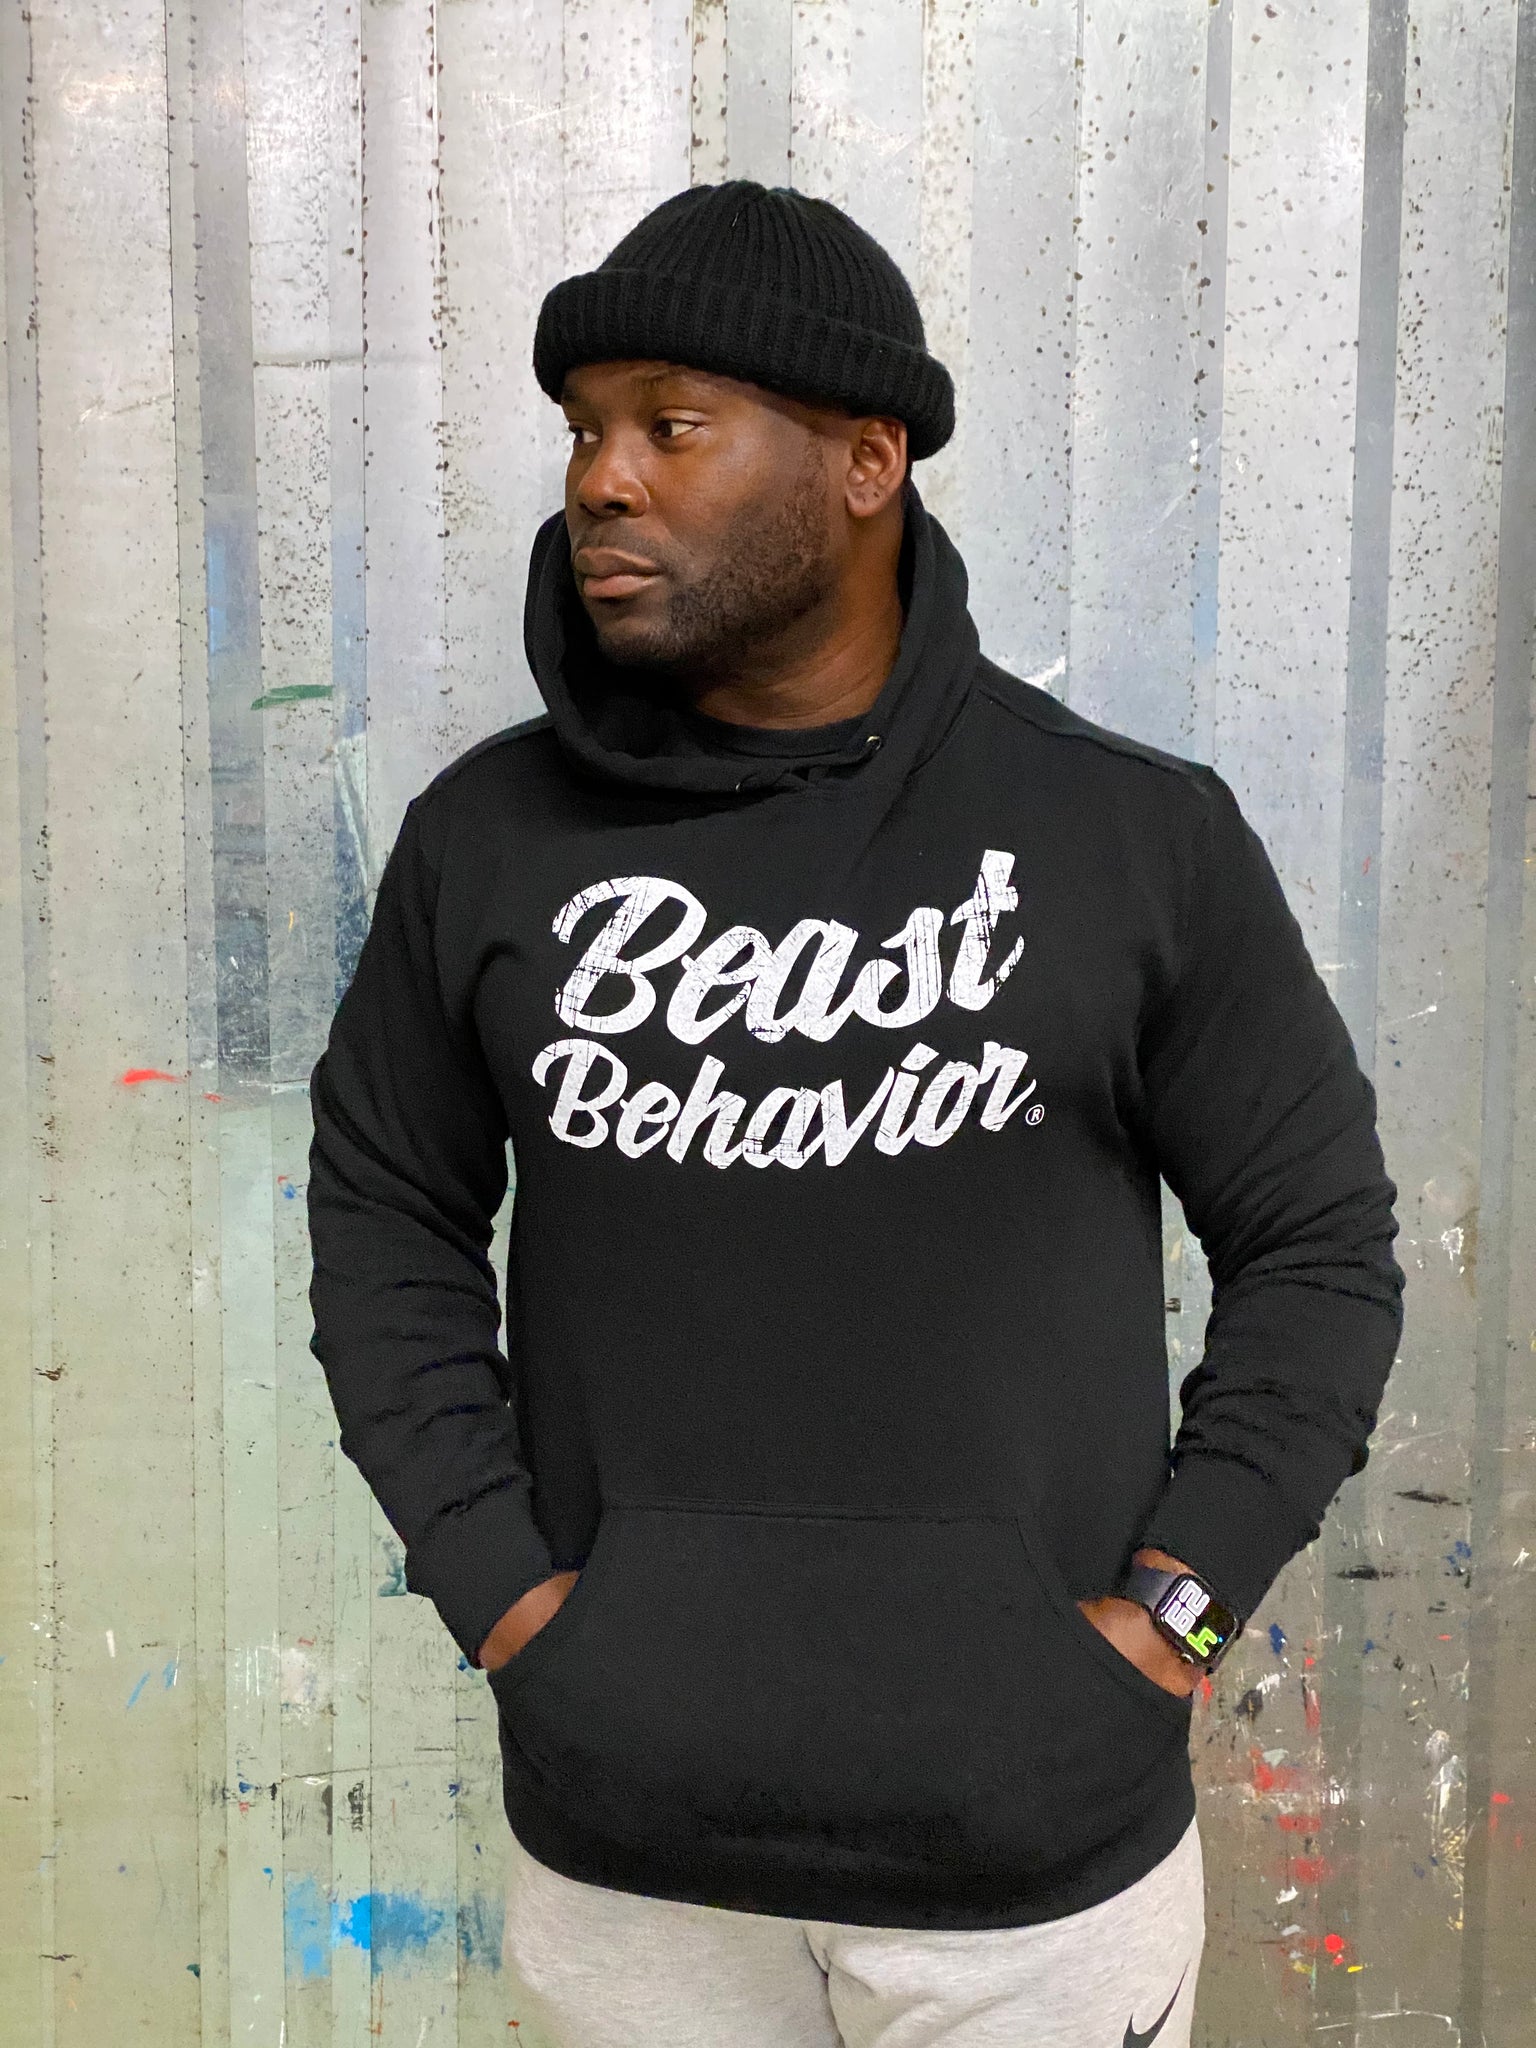 The Black “Beast-n-Cursive” Hoodie